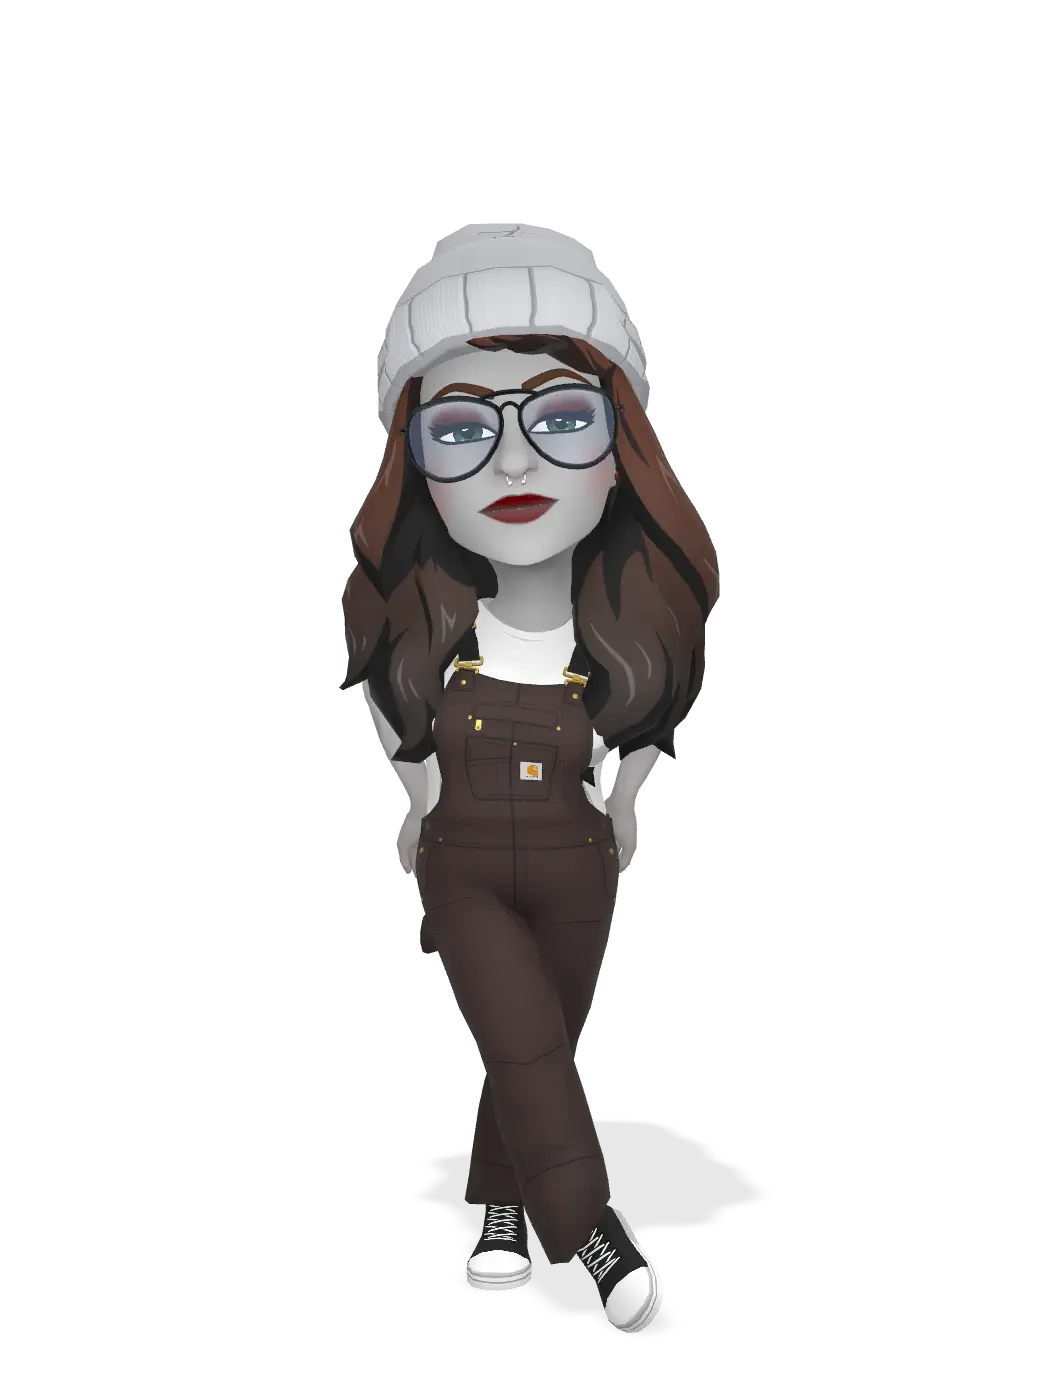 3D Bitmoji for j4d3-420 avatar